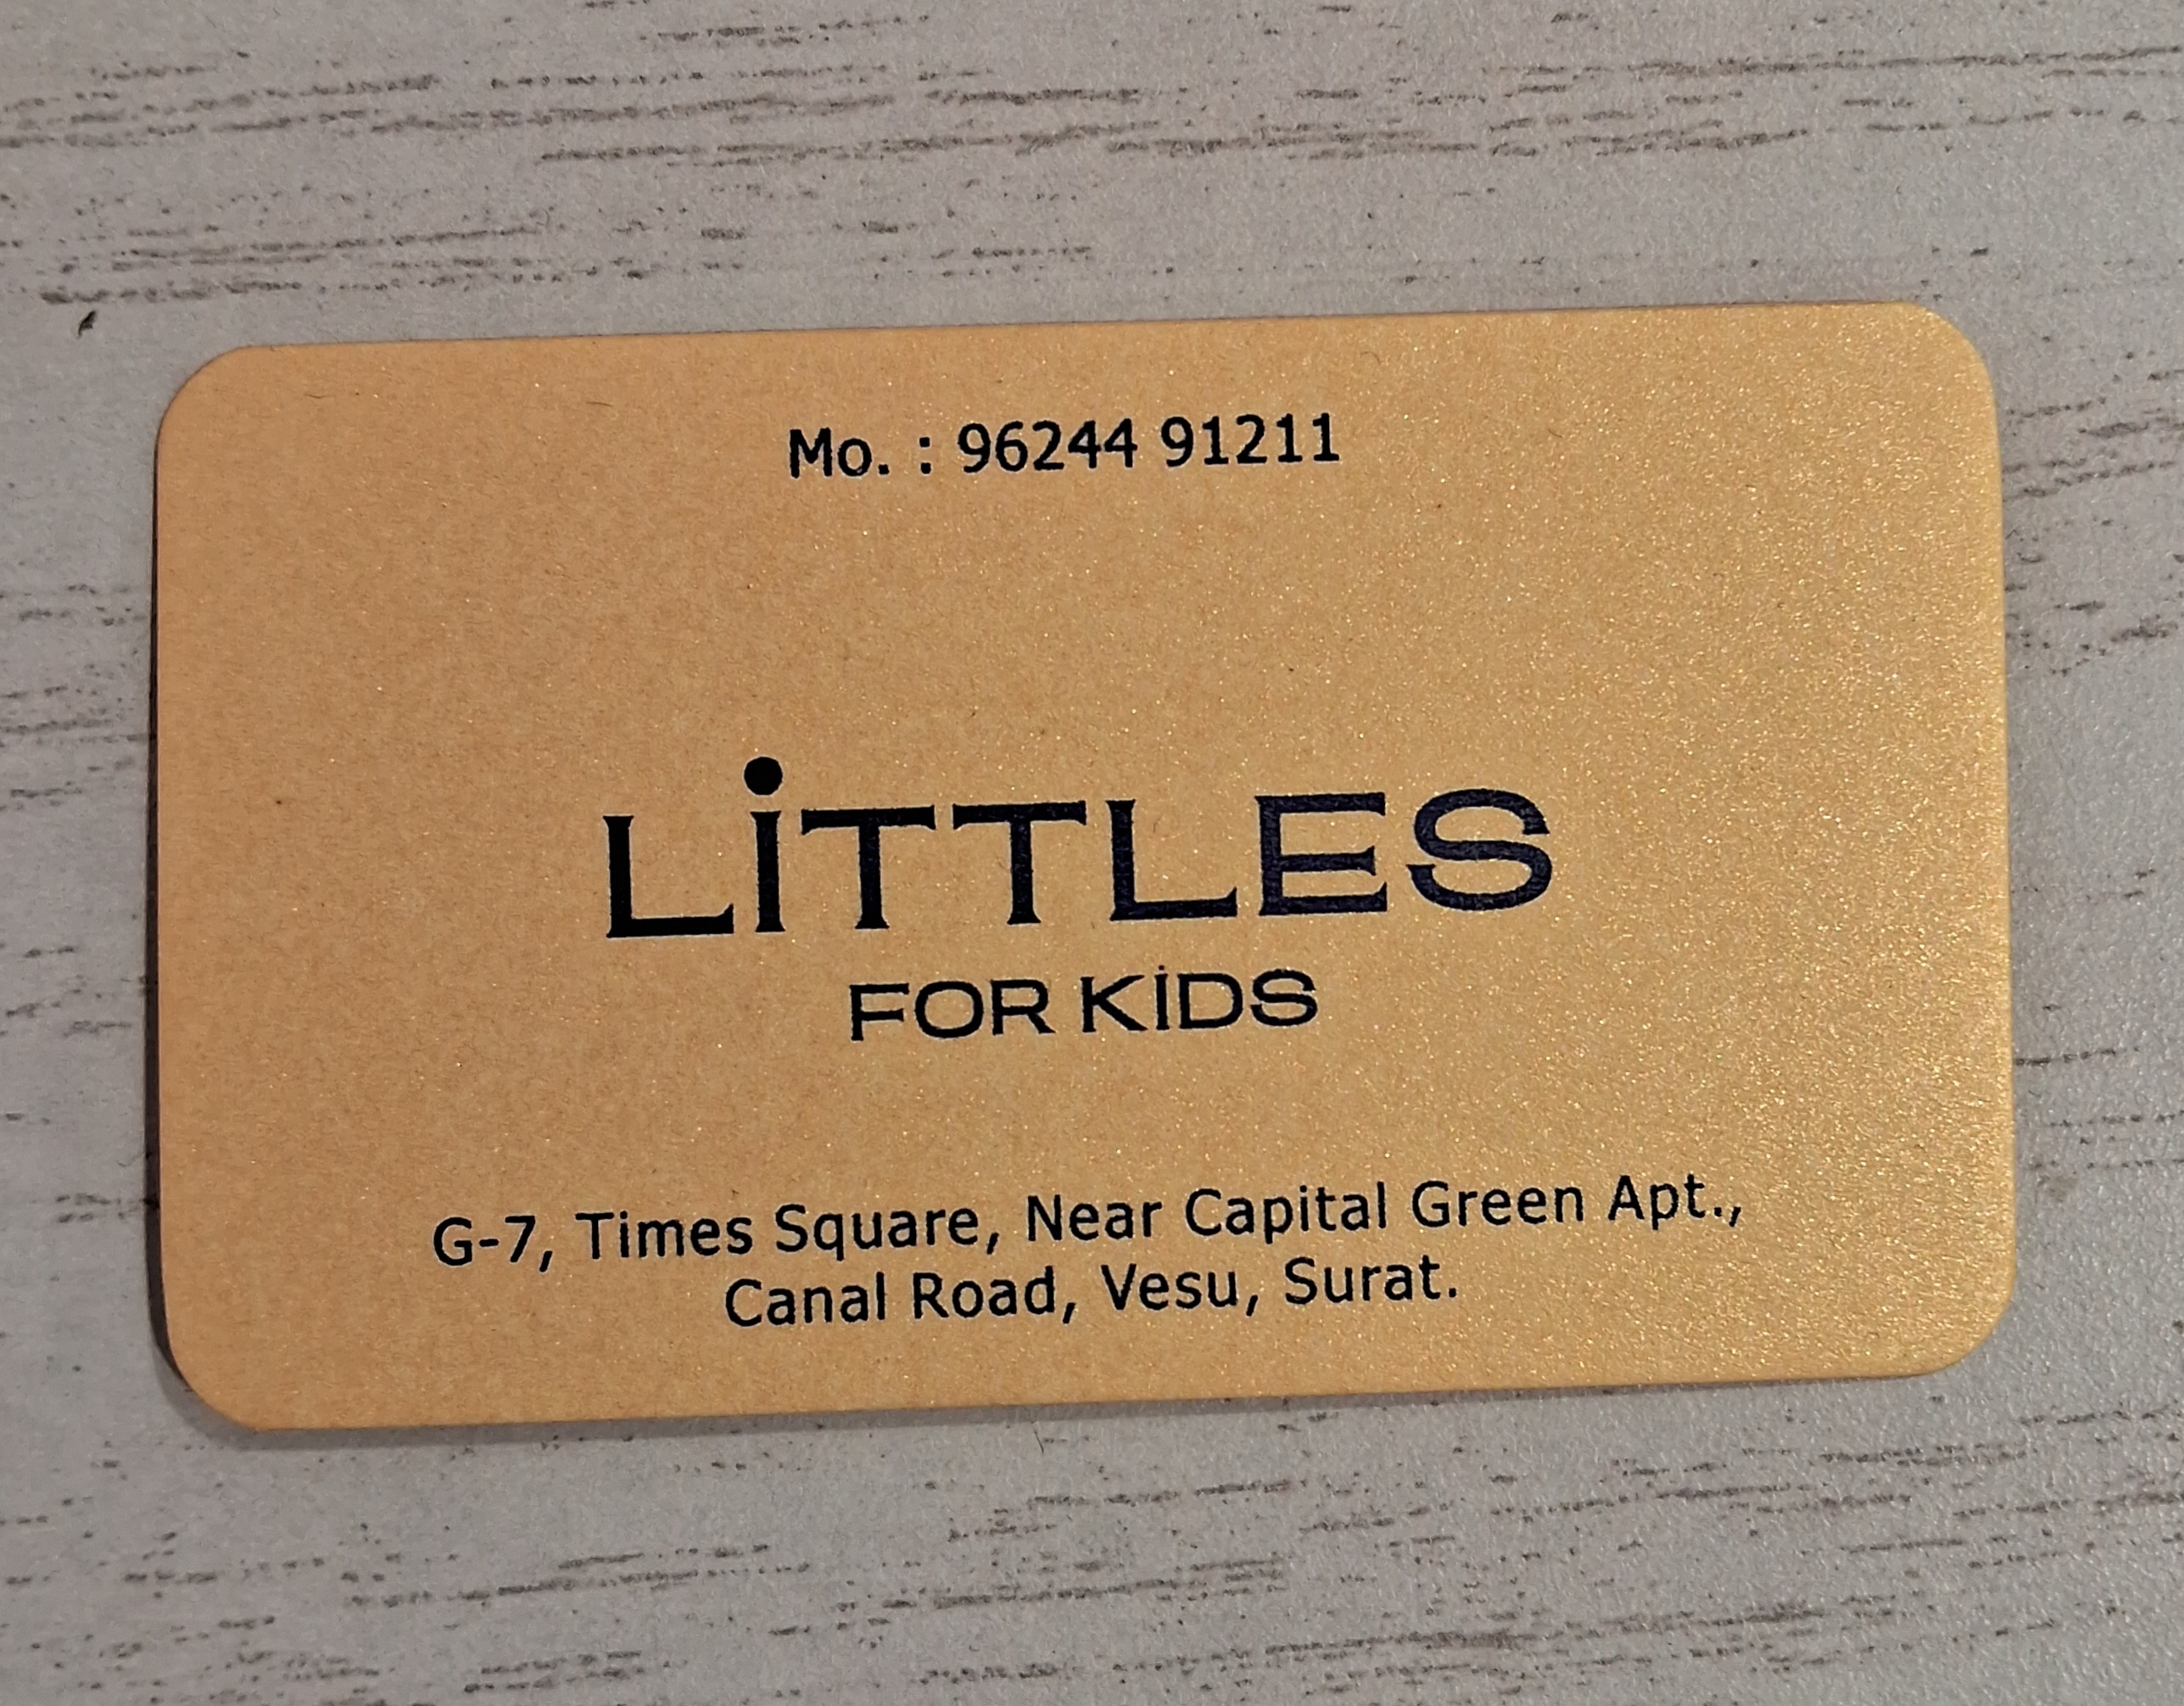 LITTLES FOR KIDS